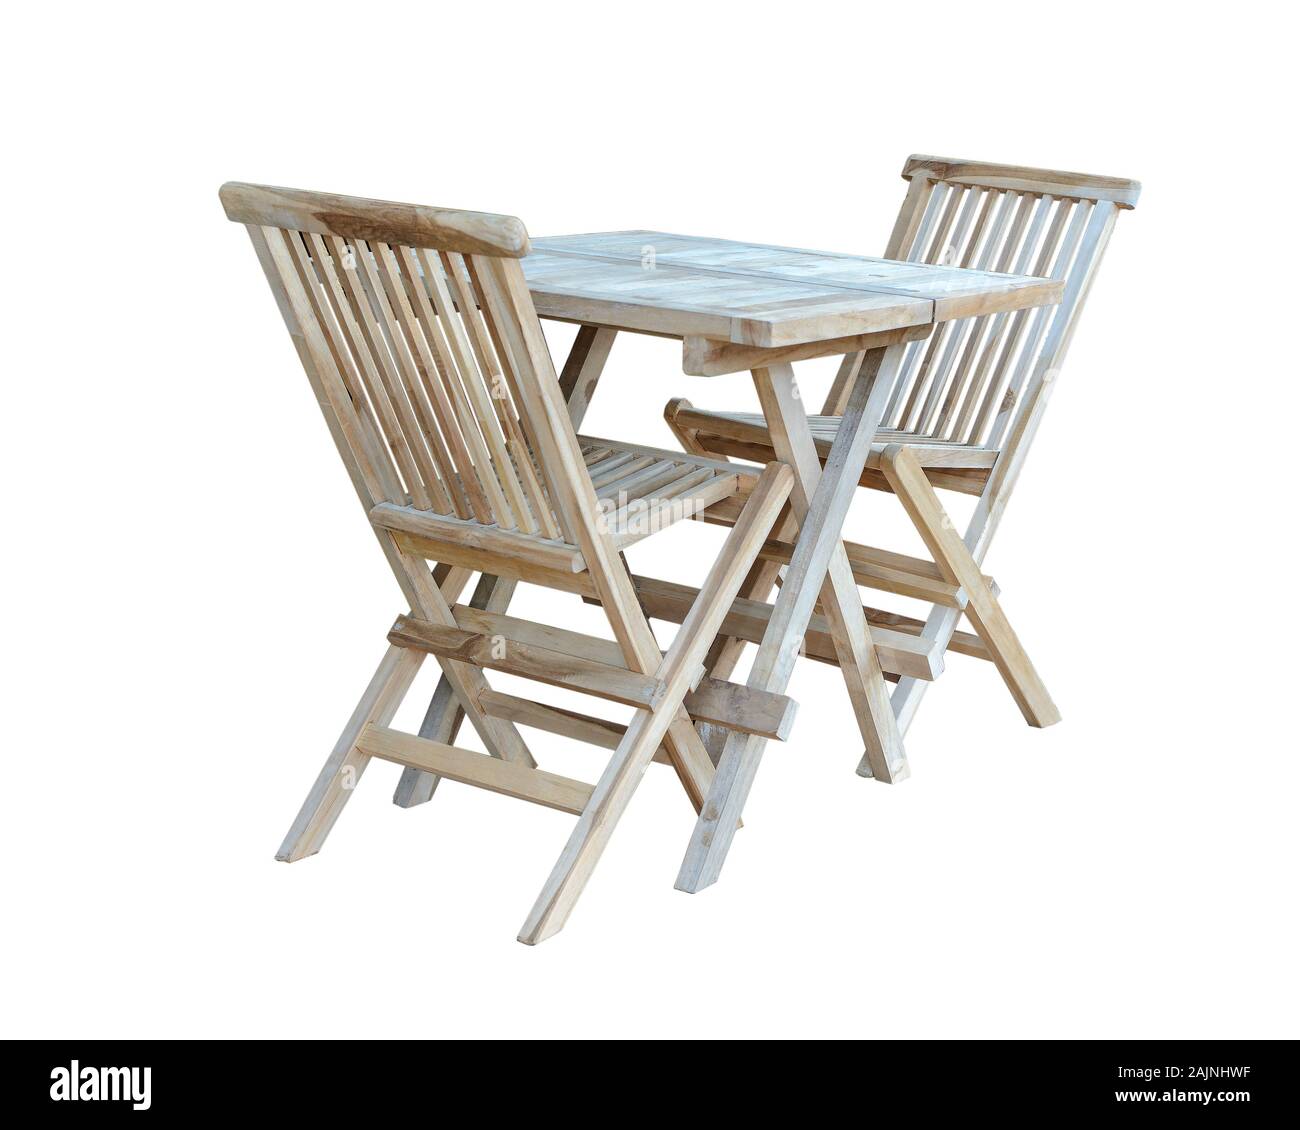 Satz Klappbare Holz- Möbel für den Garten oder Küche, auf einem weißen Hintergrund. Stockfoto